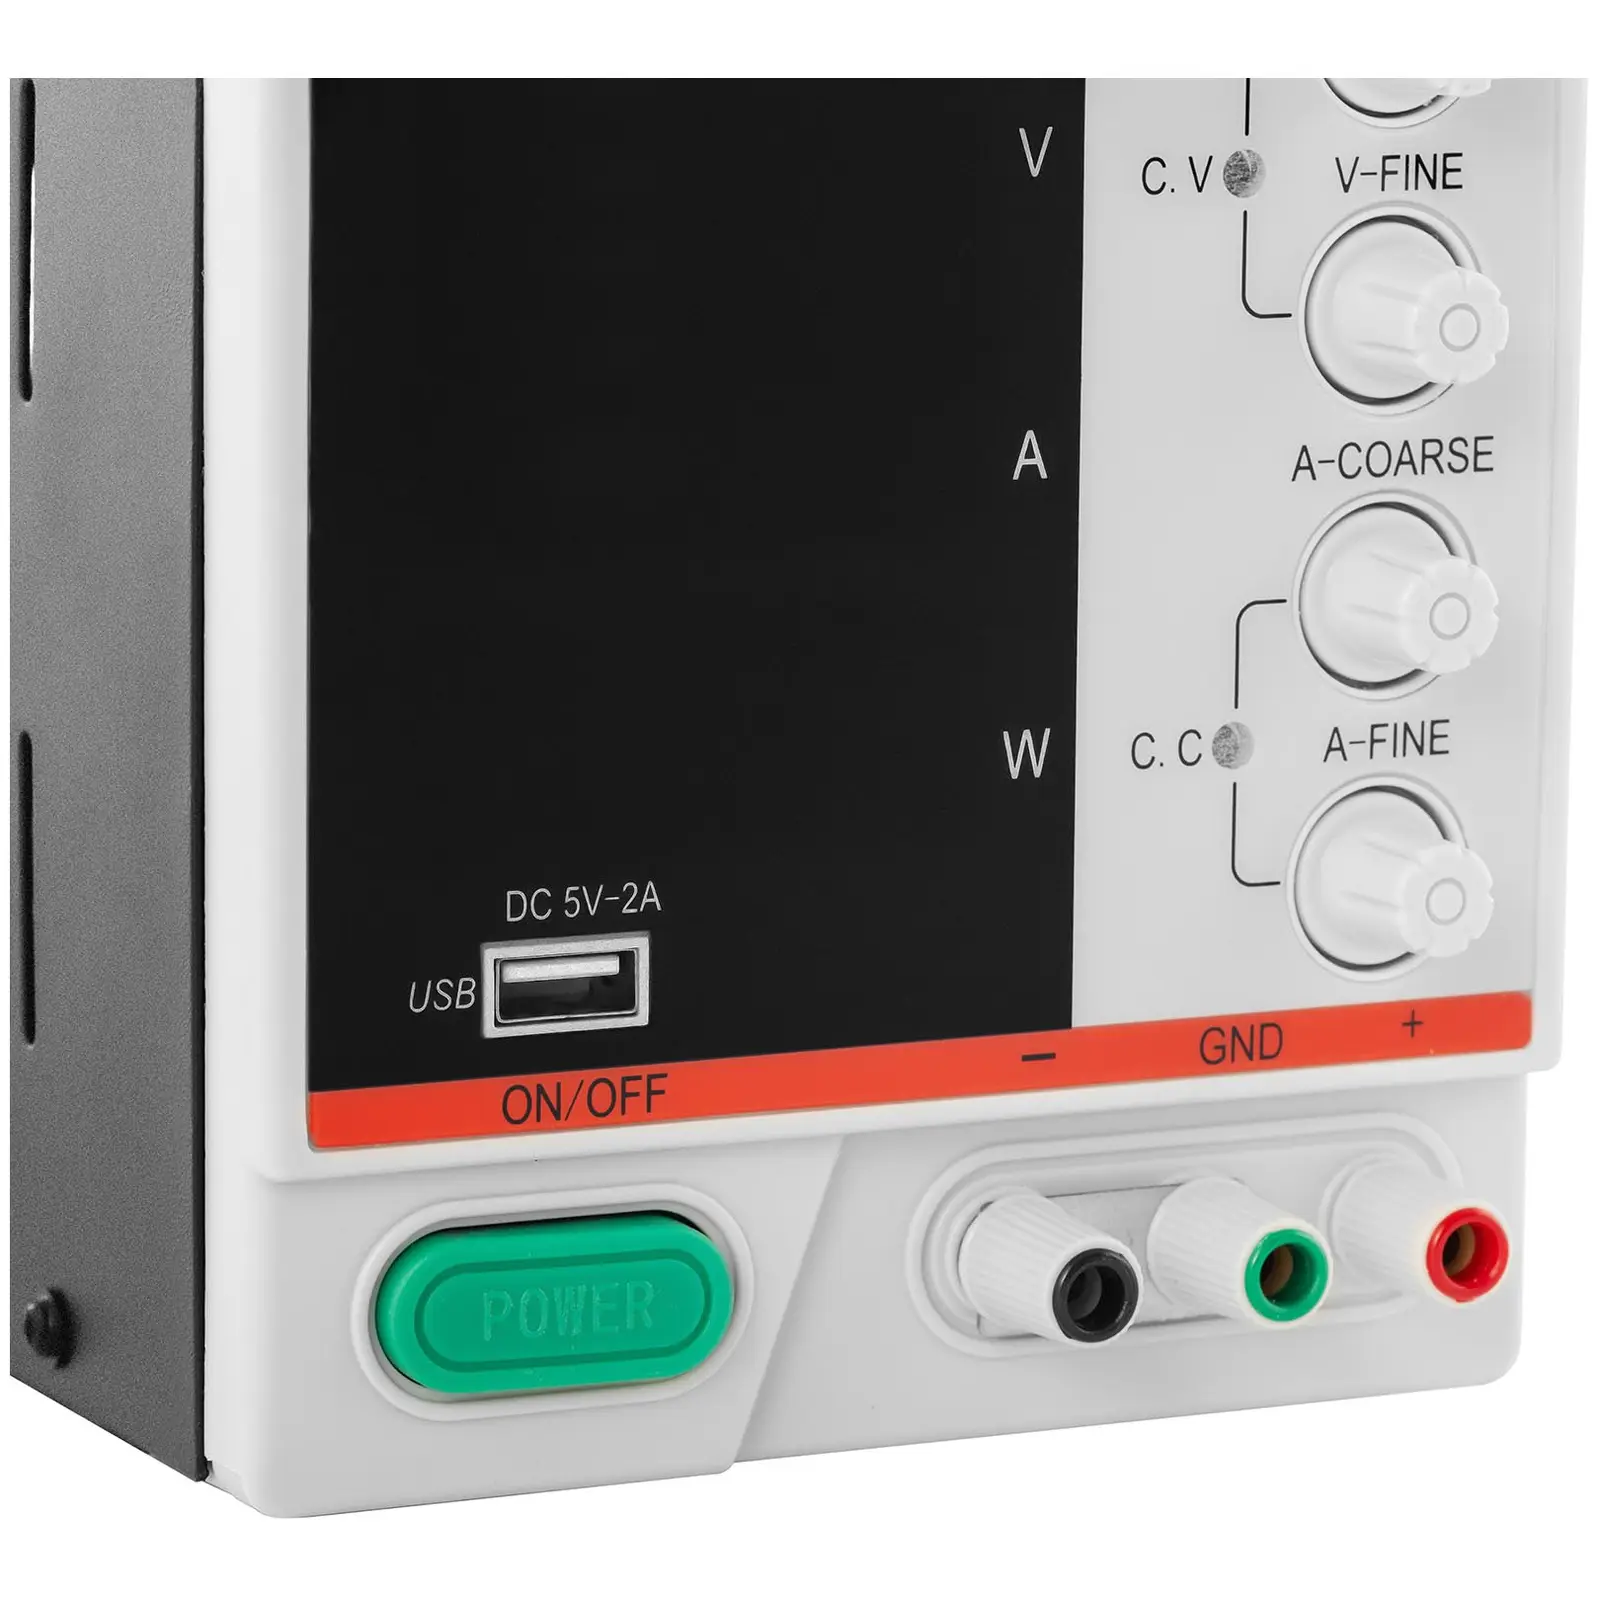 Alimentation de laboratoire - 0 - 30 V - 0 - 10 A CC - 300 W - Écran LED à 4 chiffres - USB